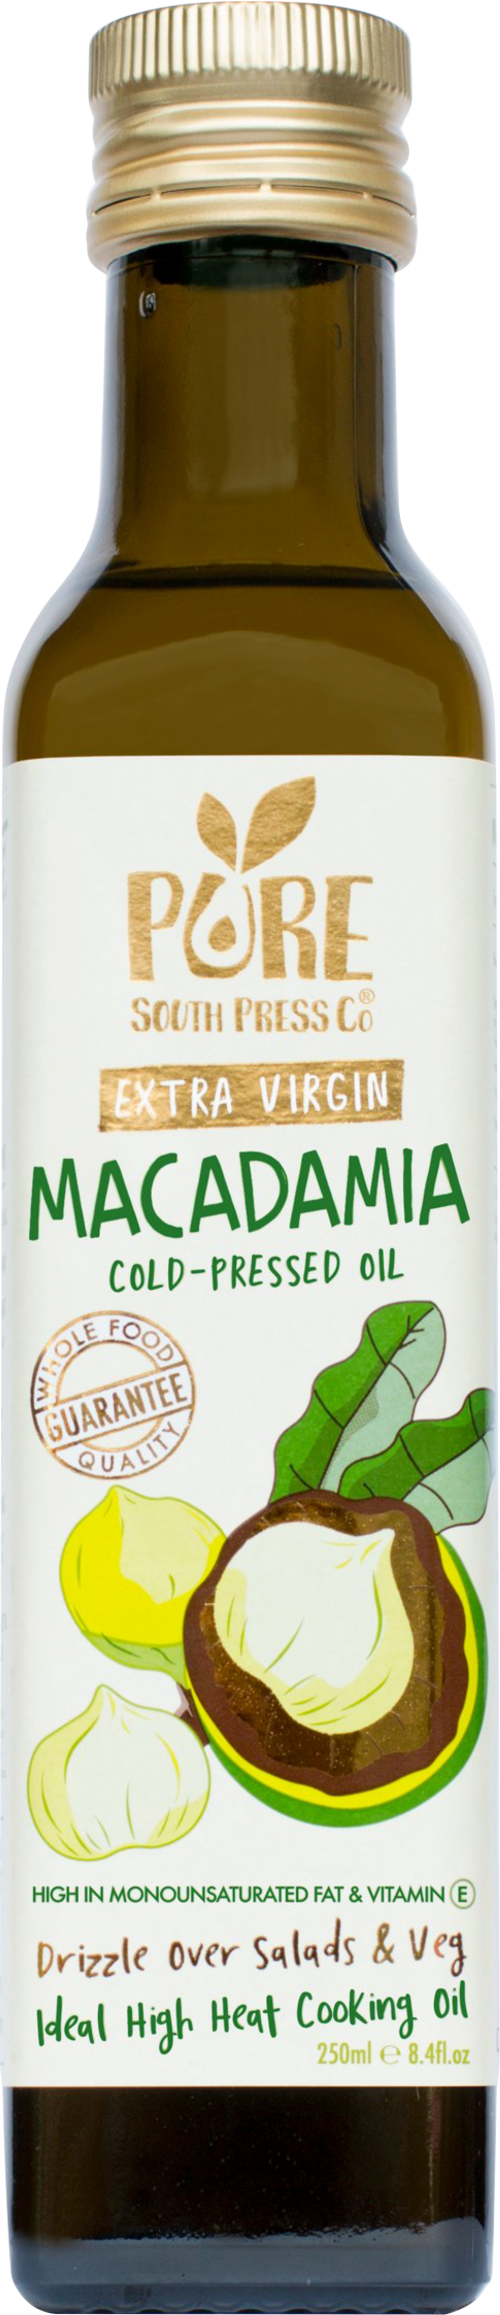 PURE SOUTH PRESS CO. Extra Virgin Macadamia Oil 250ml